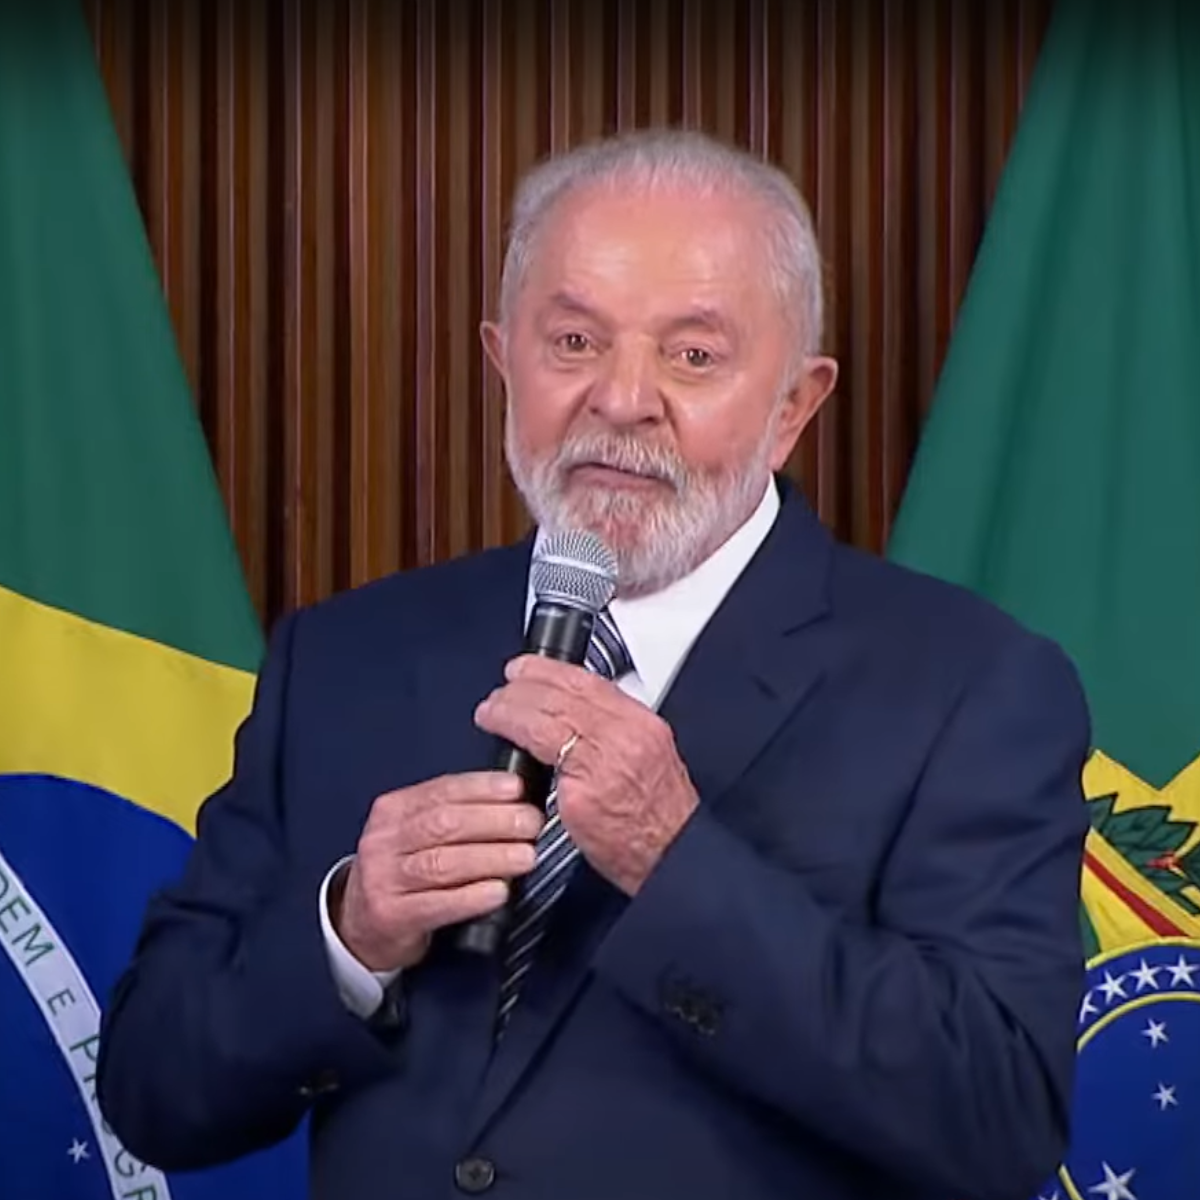  Discurso de Lula sobre Flávio Dino 